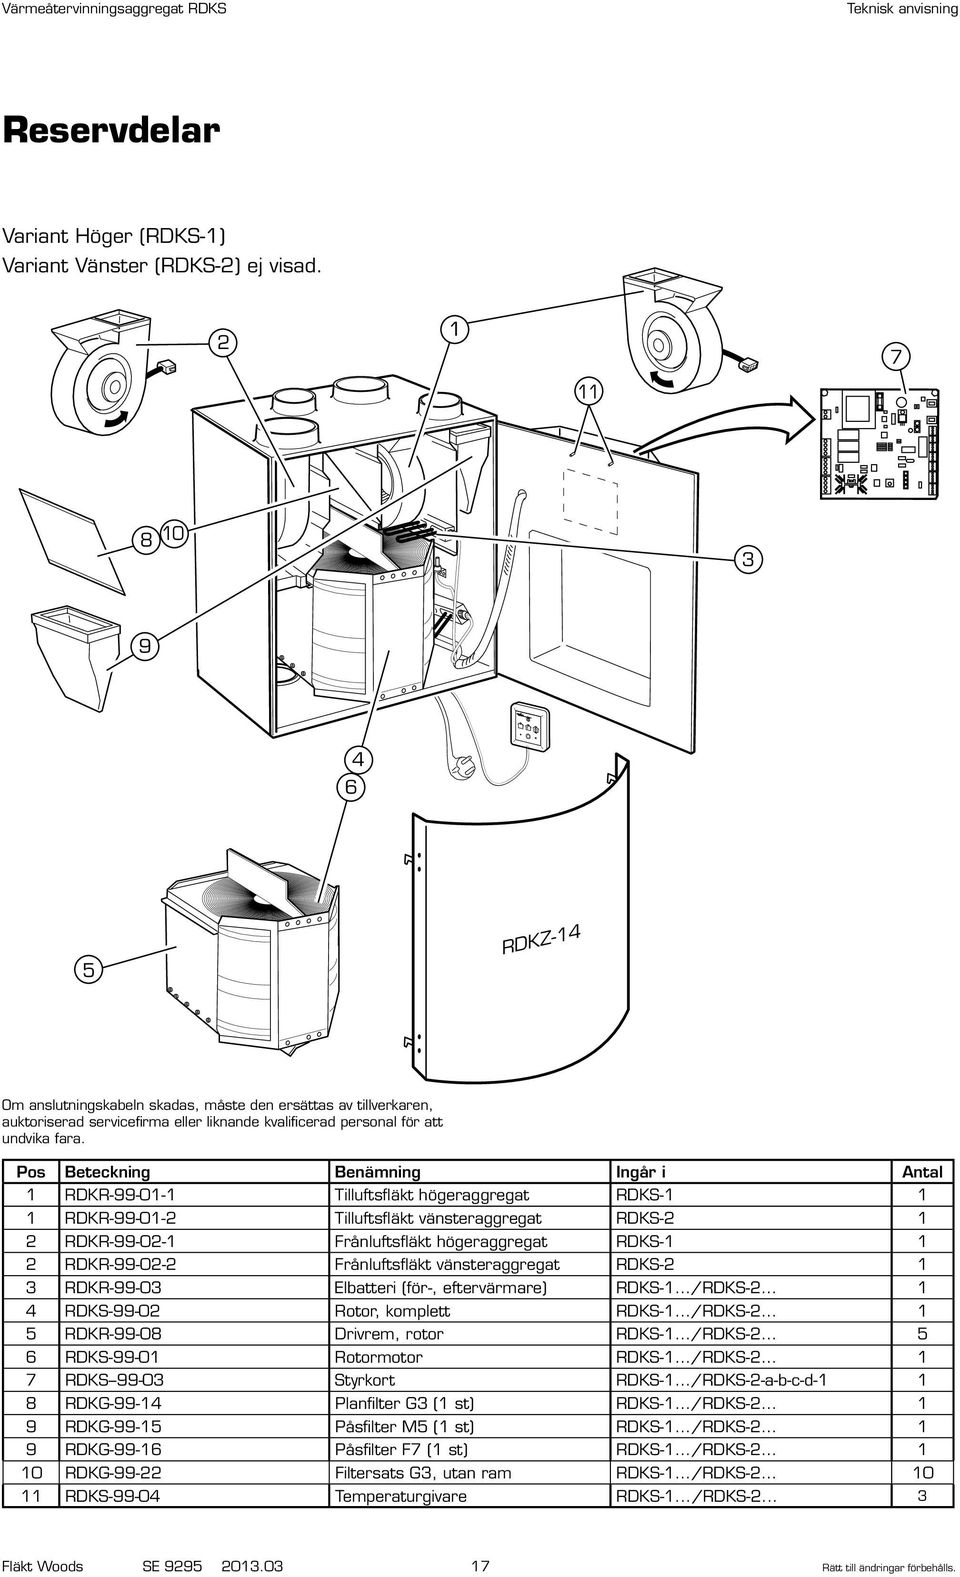 Värmeåtervinningsaggregat RDKS. Teknisk anvisning för montering, drift och  skötsel - PDF Free Download